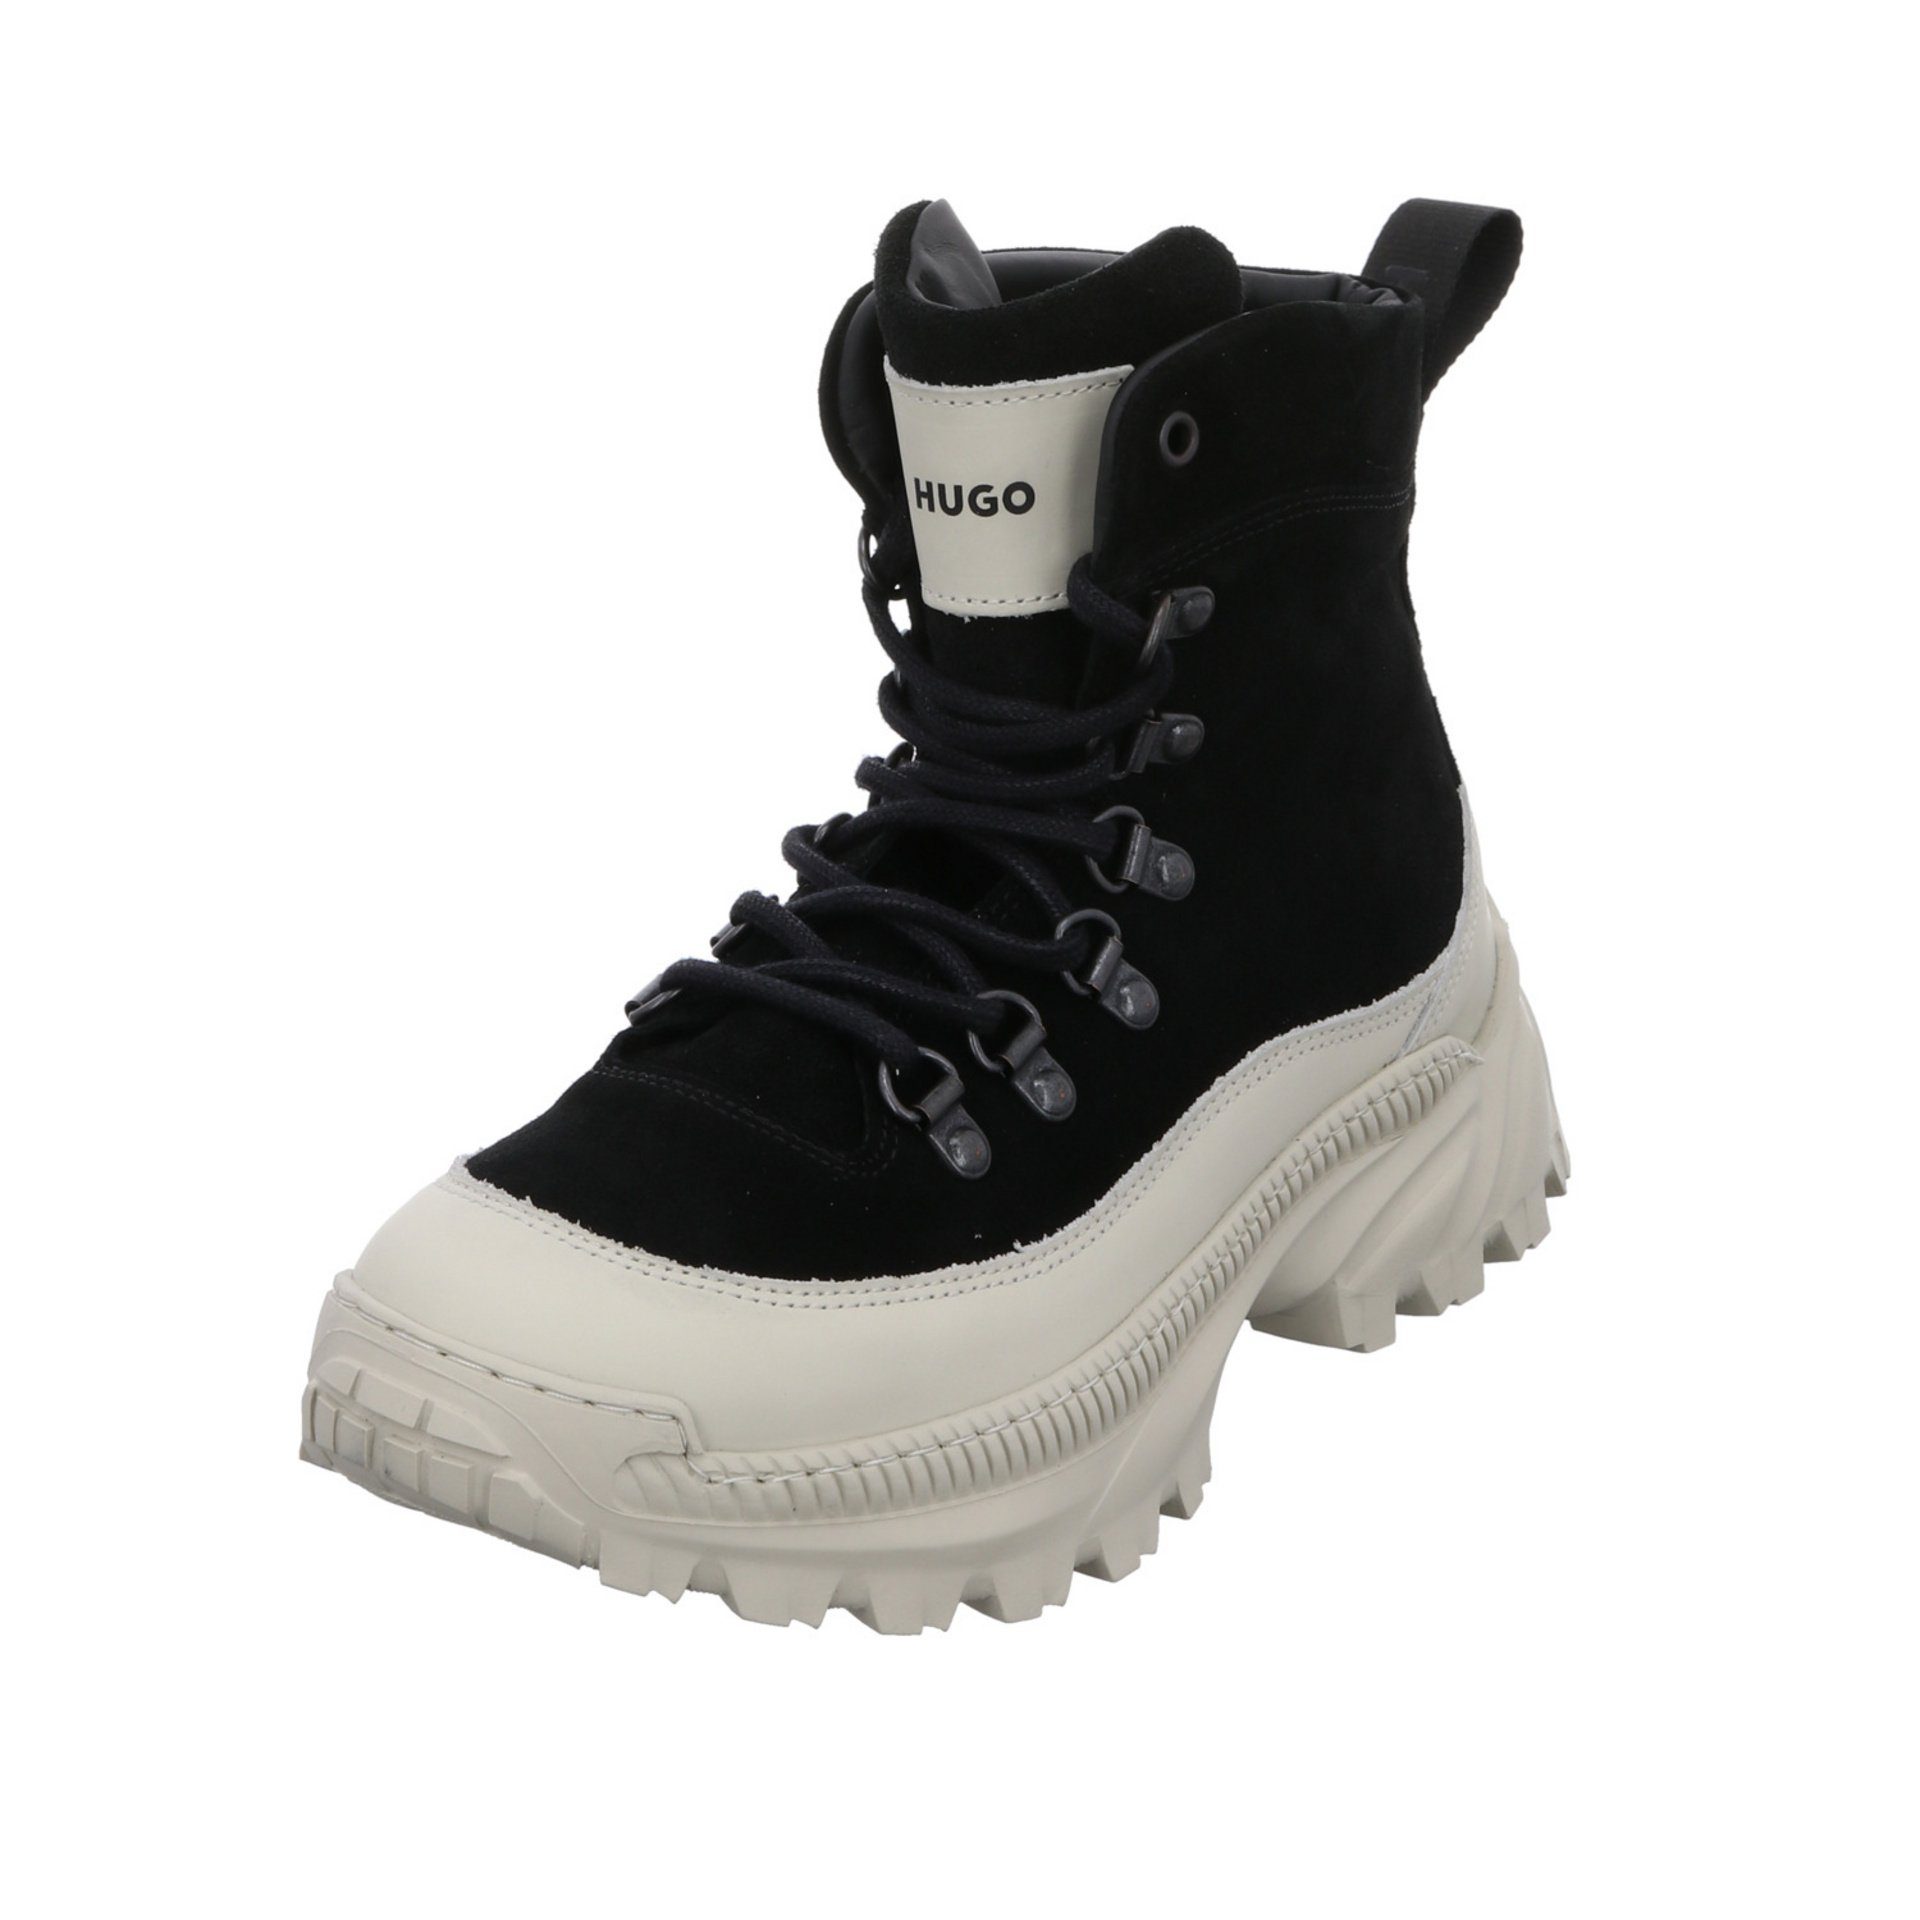 HUGO Damen Stiefeletten Schuhe Jace Lace Up Boots Schnürstiefelette Lederkombination | Sneaker